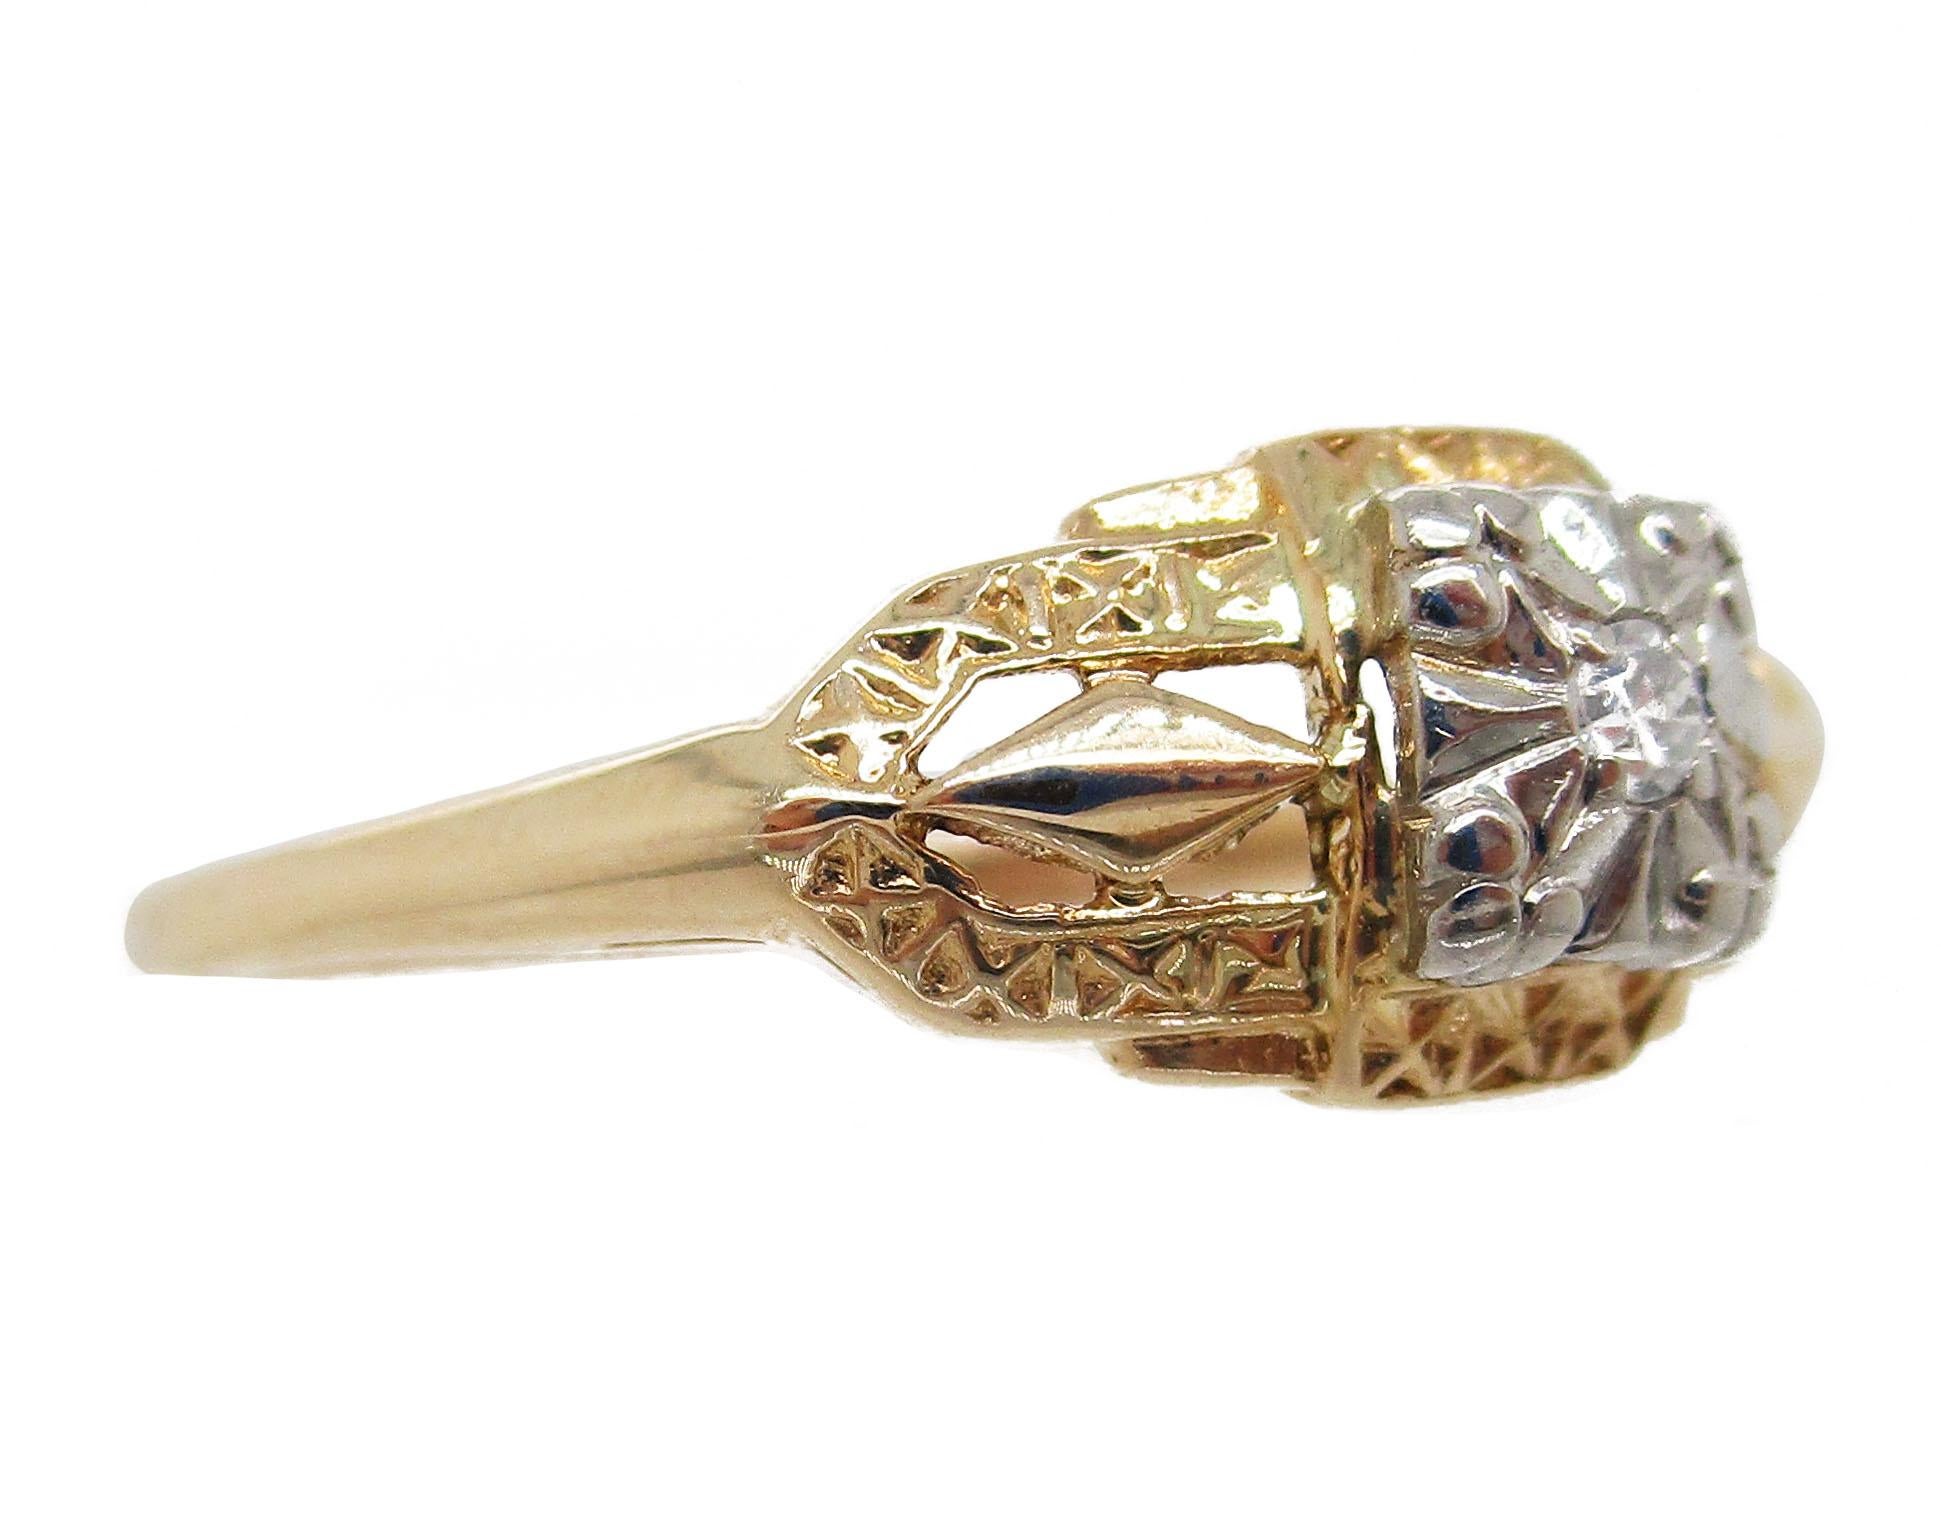 Cette magnifique bague de fiançailles présente deux tons d'or 14 carats ! Les épaules et la tige sont en or jaune brillant, et la tête de l'anneau est en or blanc doux. L'or blanc constitue l'arrière-plan parfait pour l'étonnante pierre centrale en